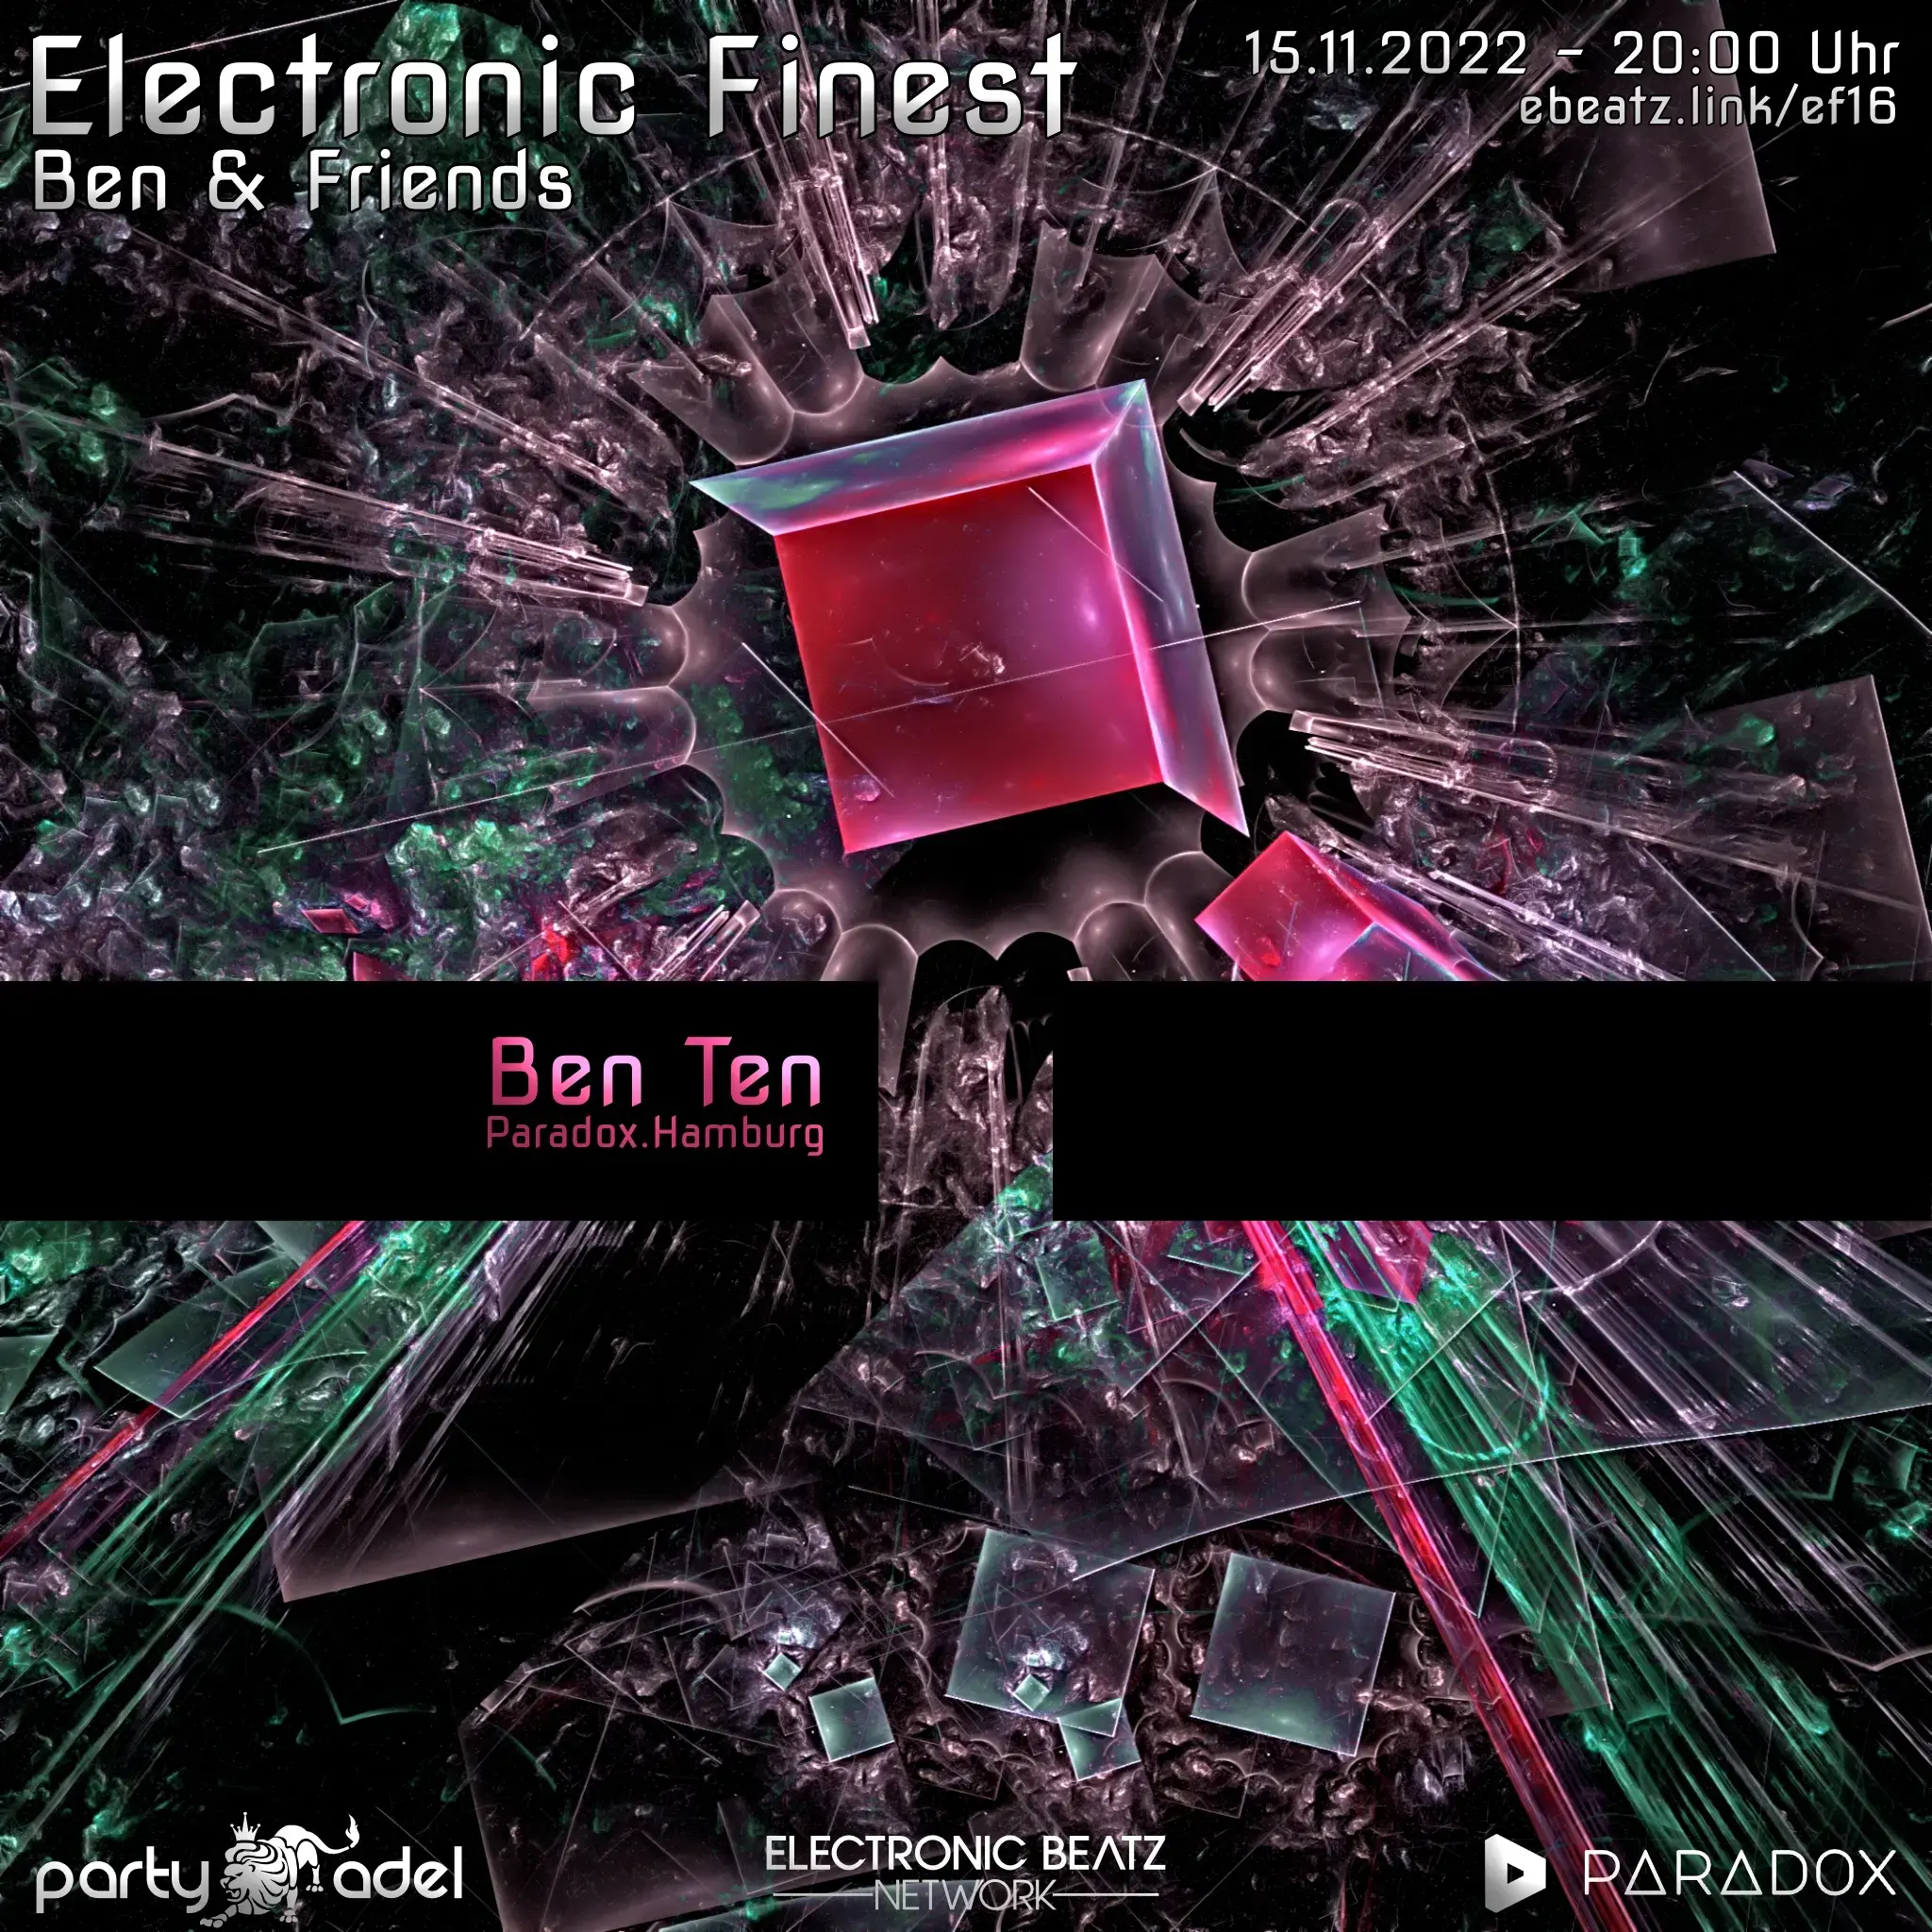 Ben Ten @ Electronic Finest (15.11.2022)